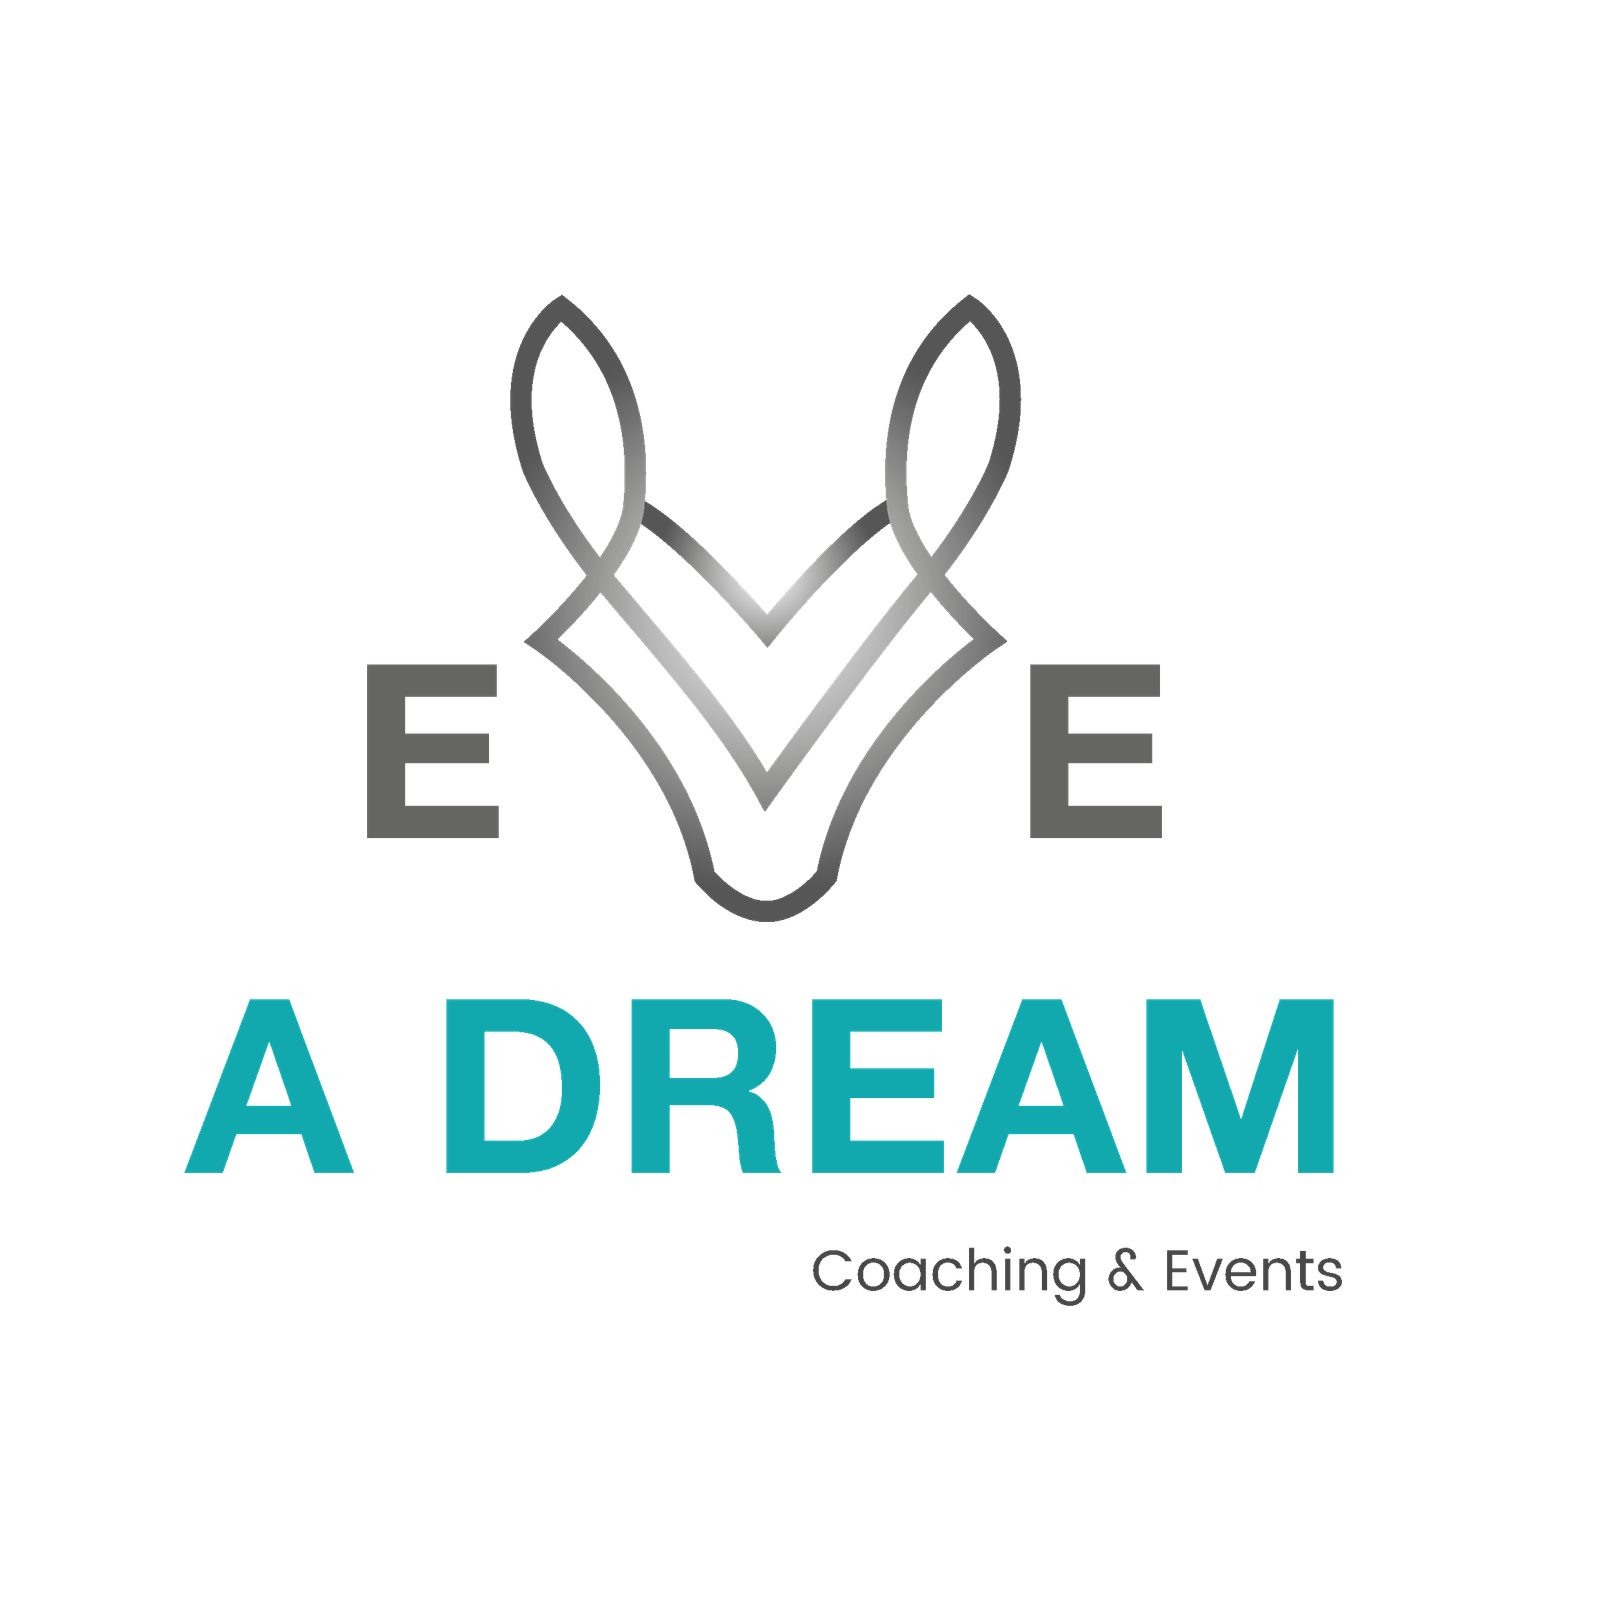 Eve a dream